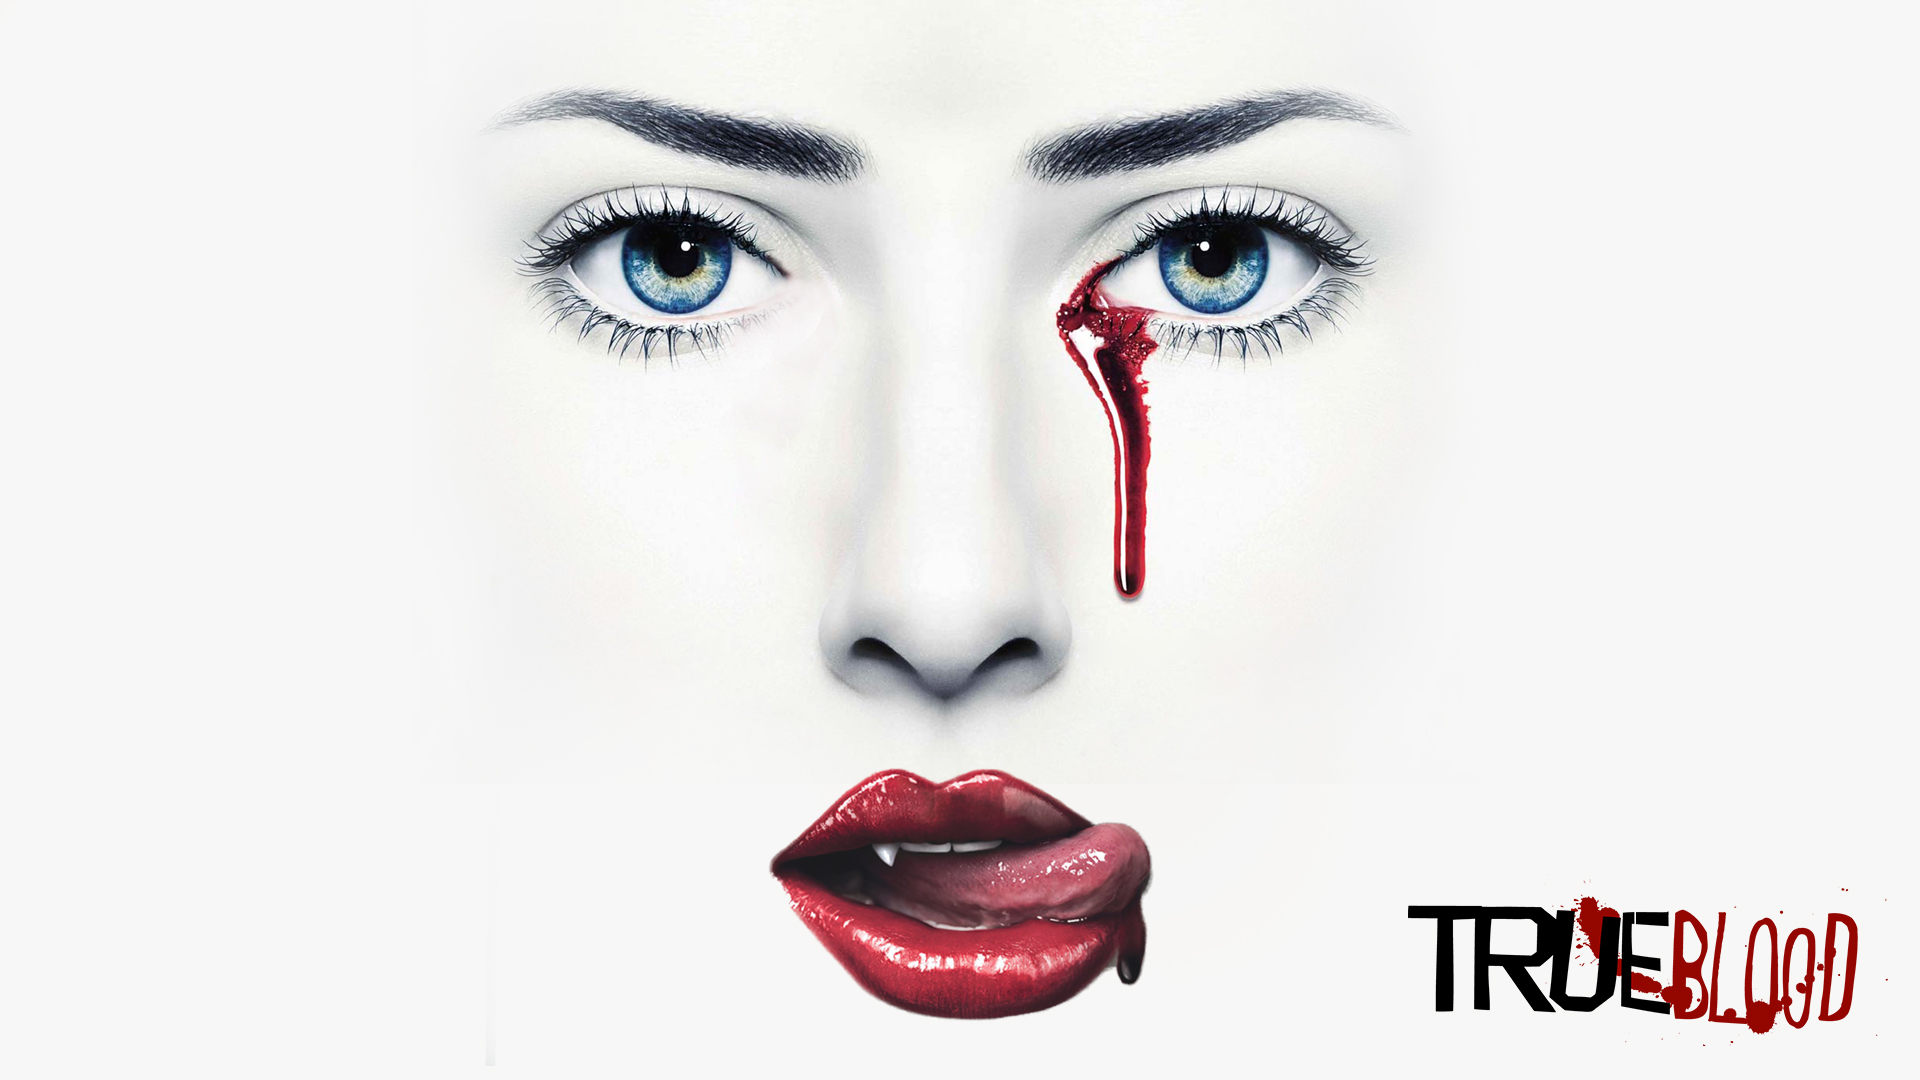 True Blood HD Wallpaper For Desktop